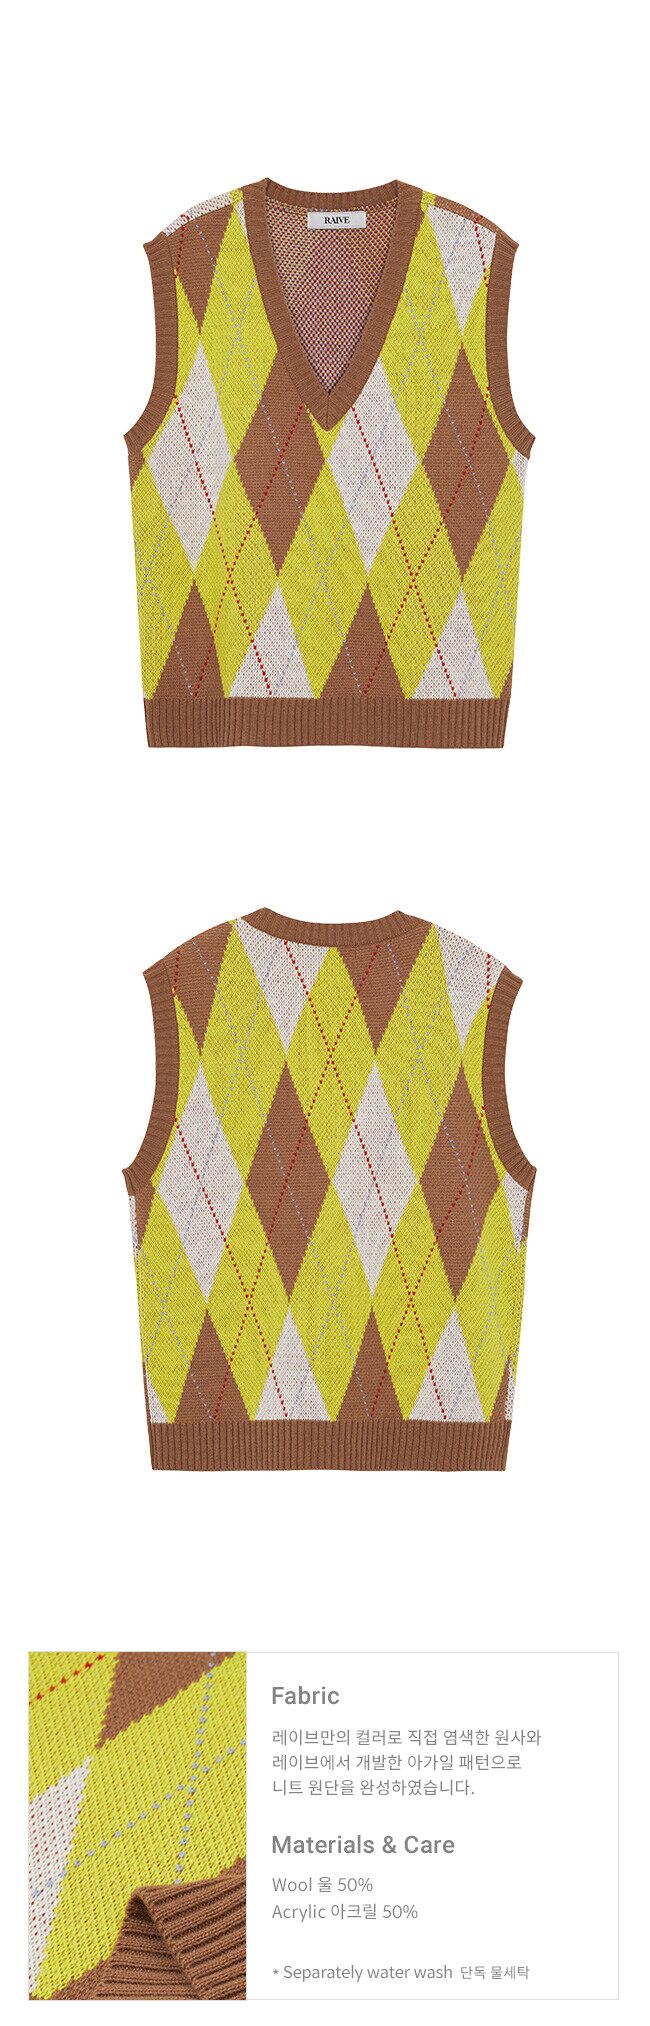 RAIVE레이브]Argyle Knit Vest in_VK0AV2330 / 2color